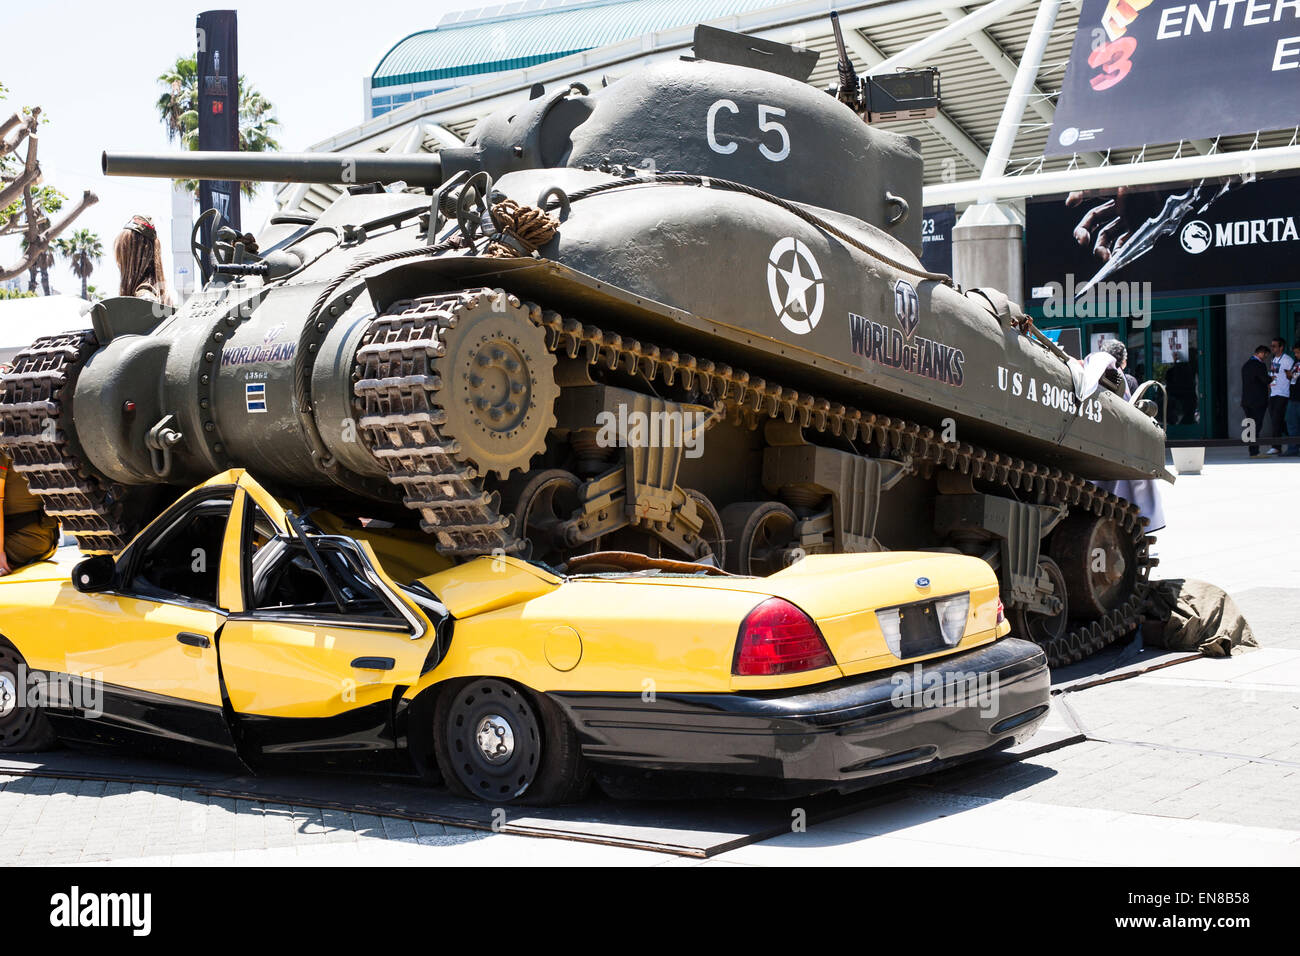 Une réplique d'une guerre mondiale 2 réservoir comme en vedette dans le jeu vidéo en écrasant un taxi en face de l'E3 2014. Banque D'Images